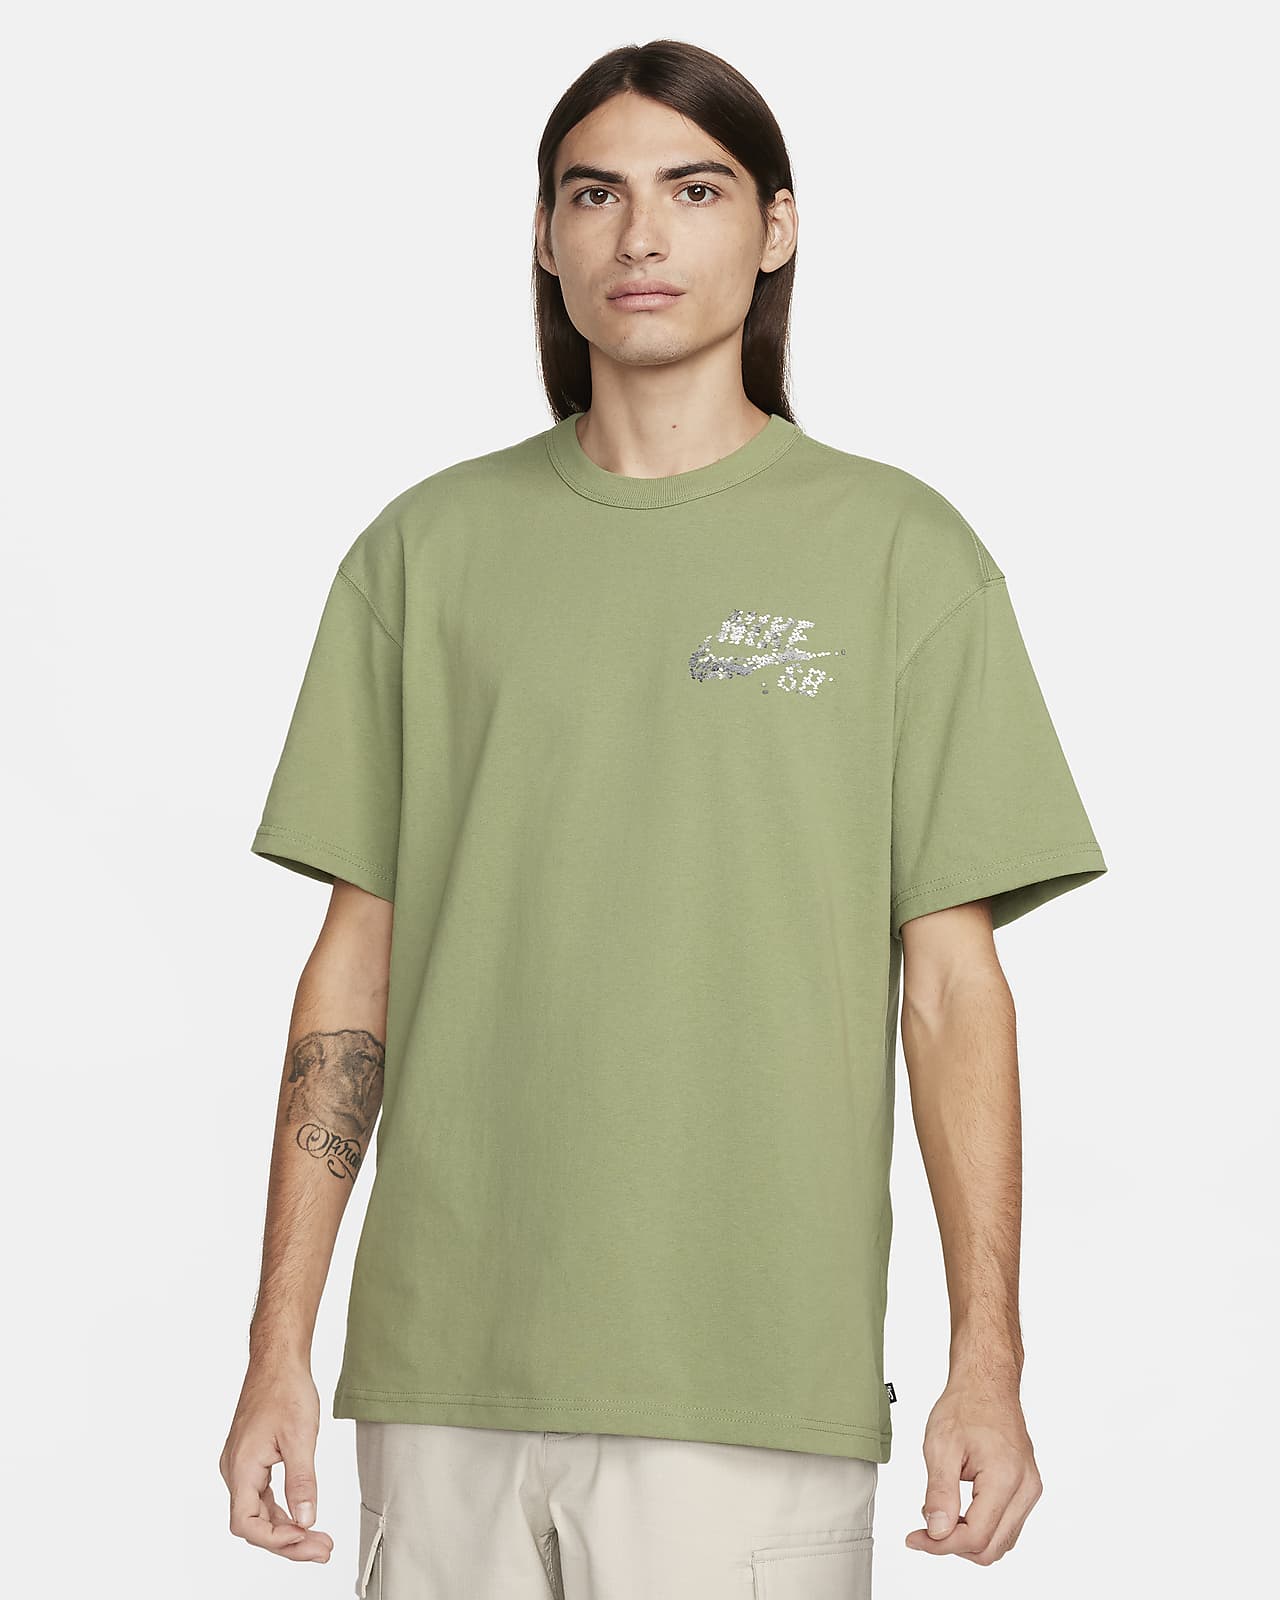 Nike SB Yuto Max90 T-Shirt